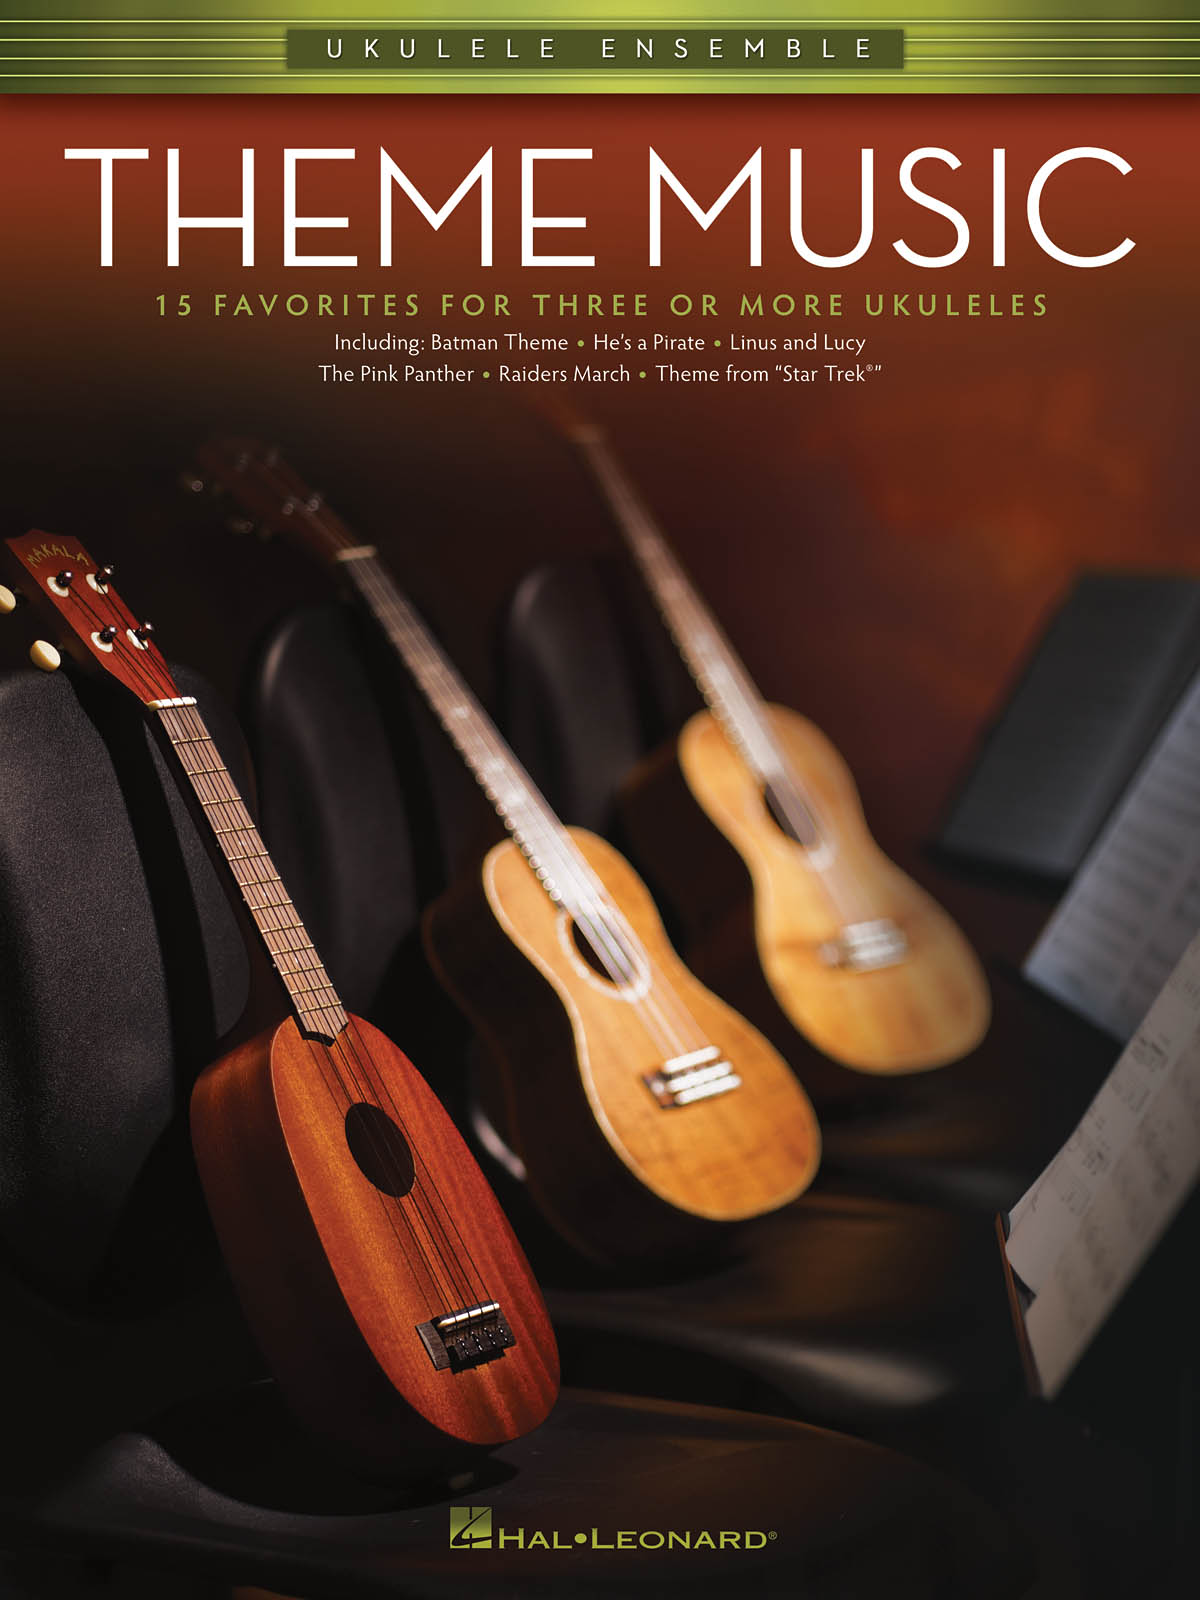 Ukulele Ensemble: Theme Music noty pro soubor ukulele